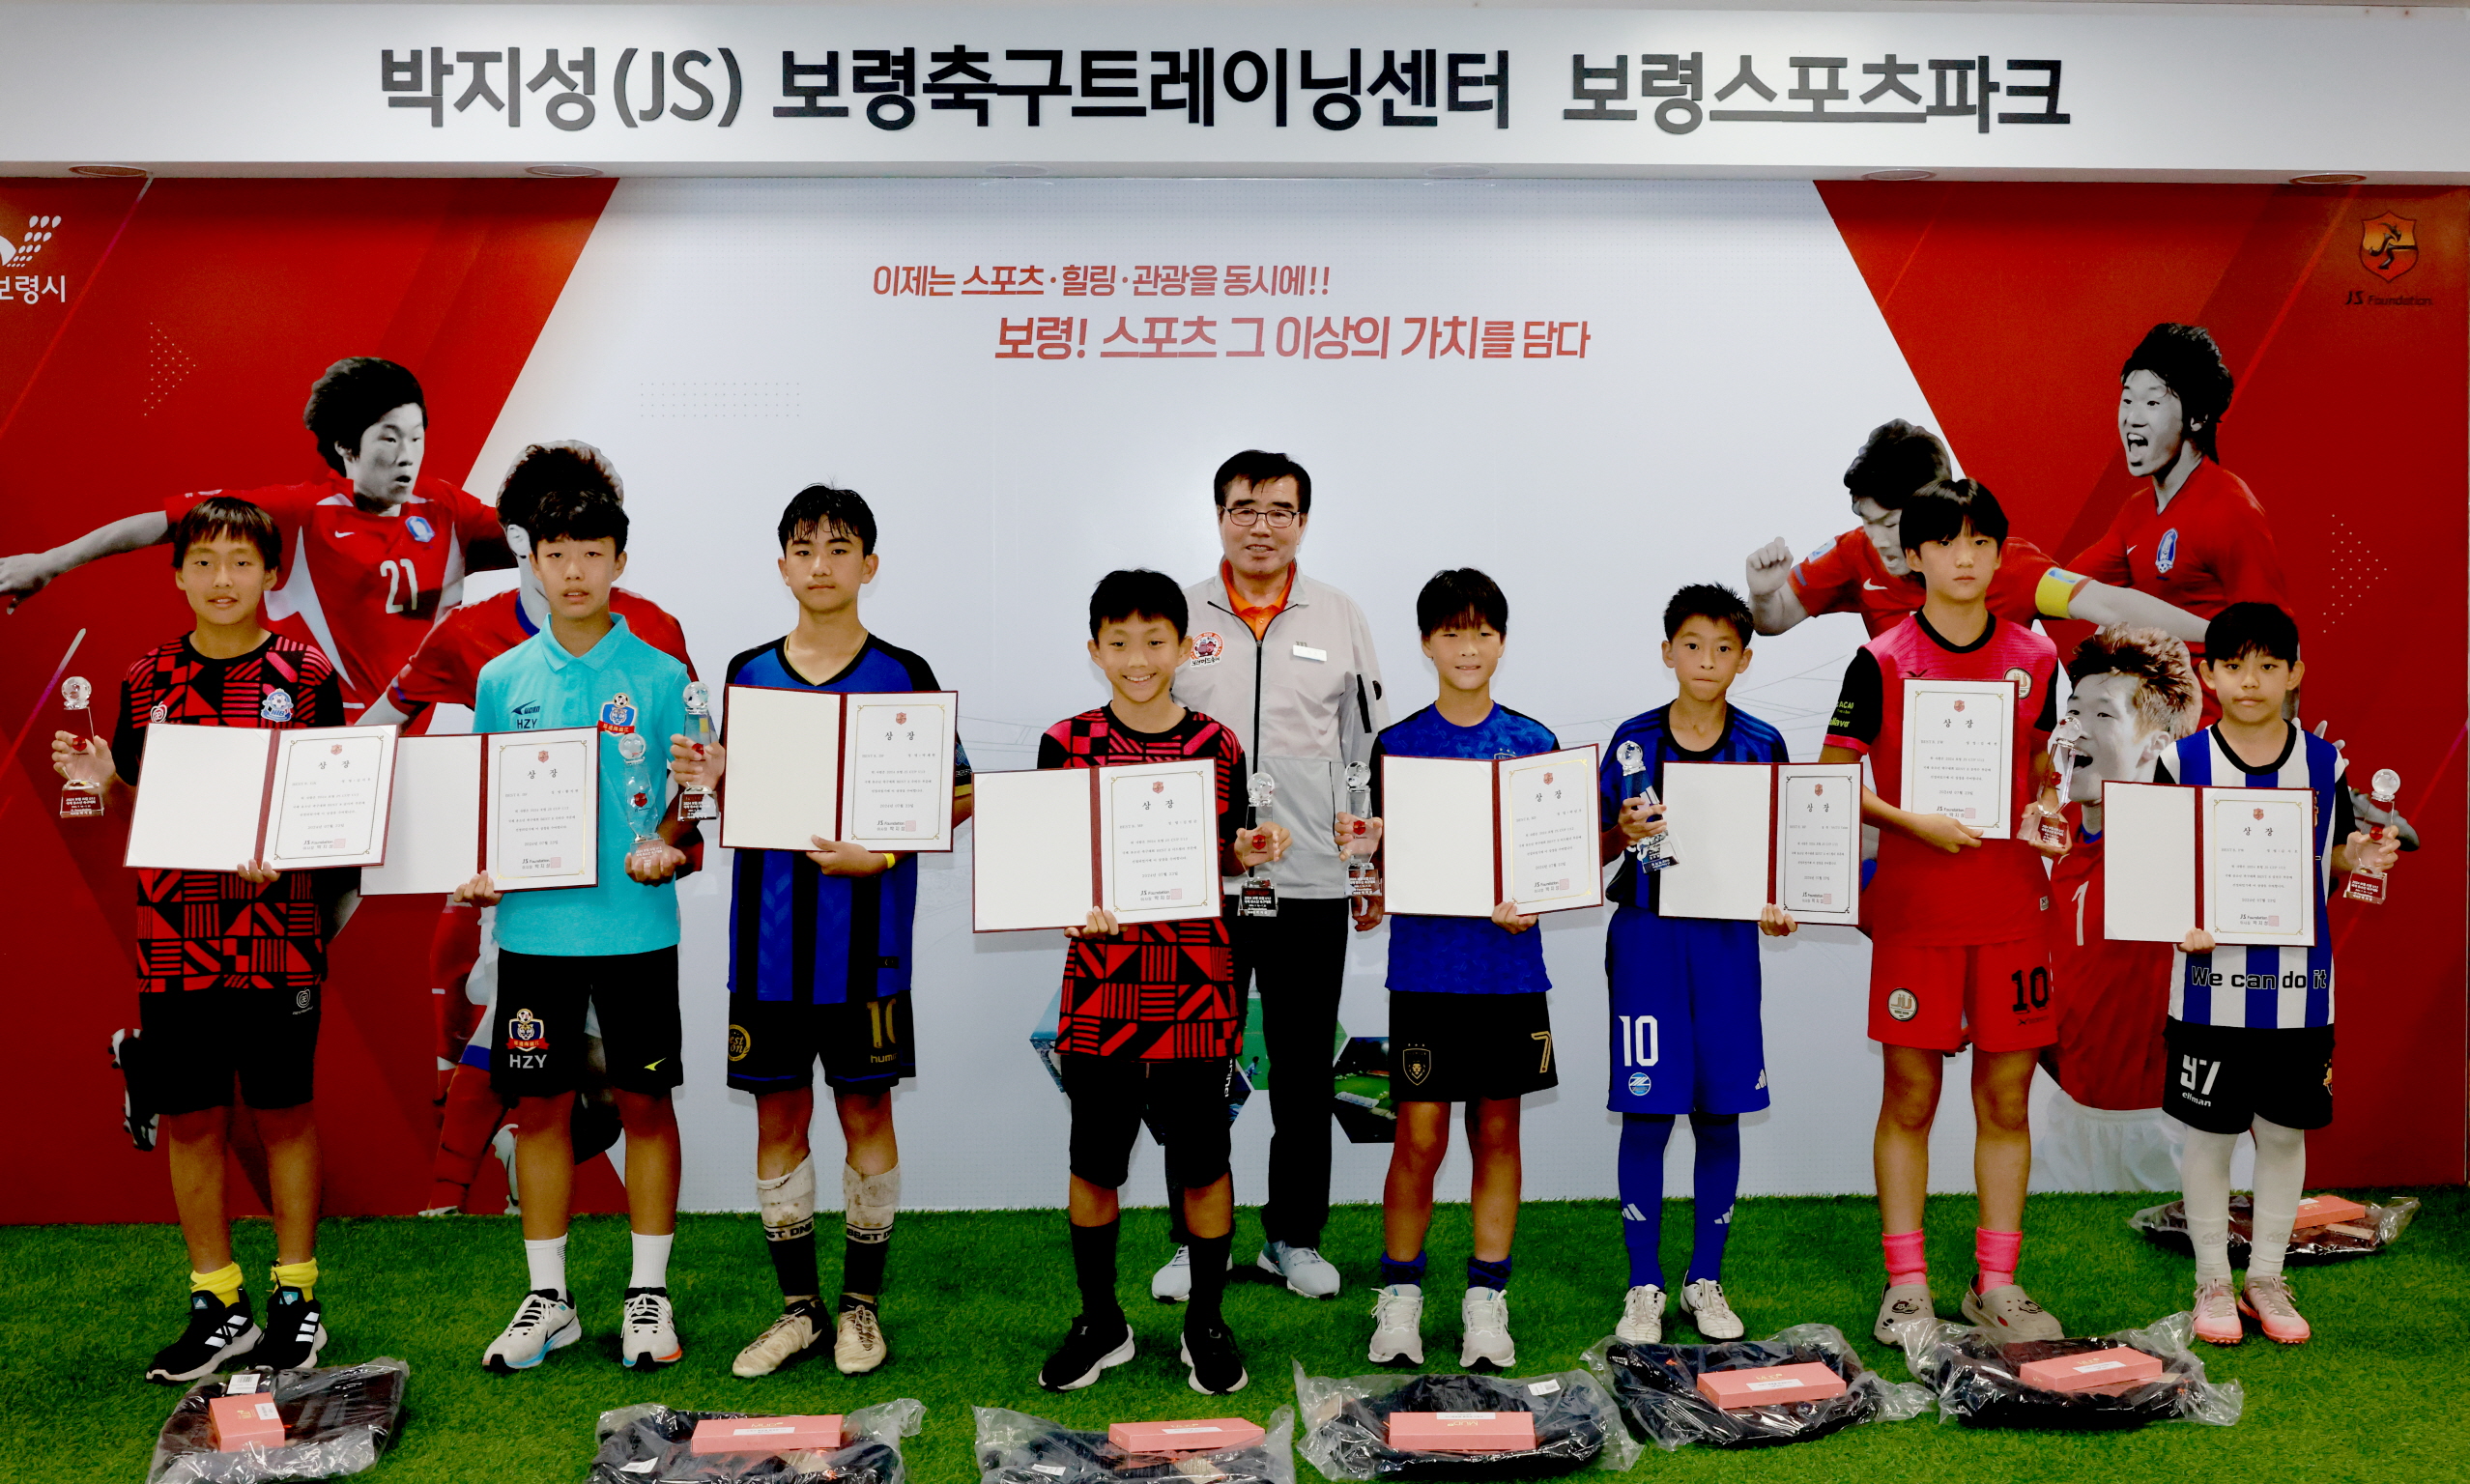 보령 JS CUP U12 국제유소년 축구대회 폐회식